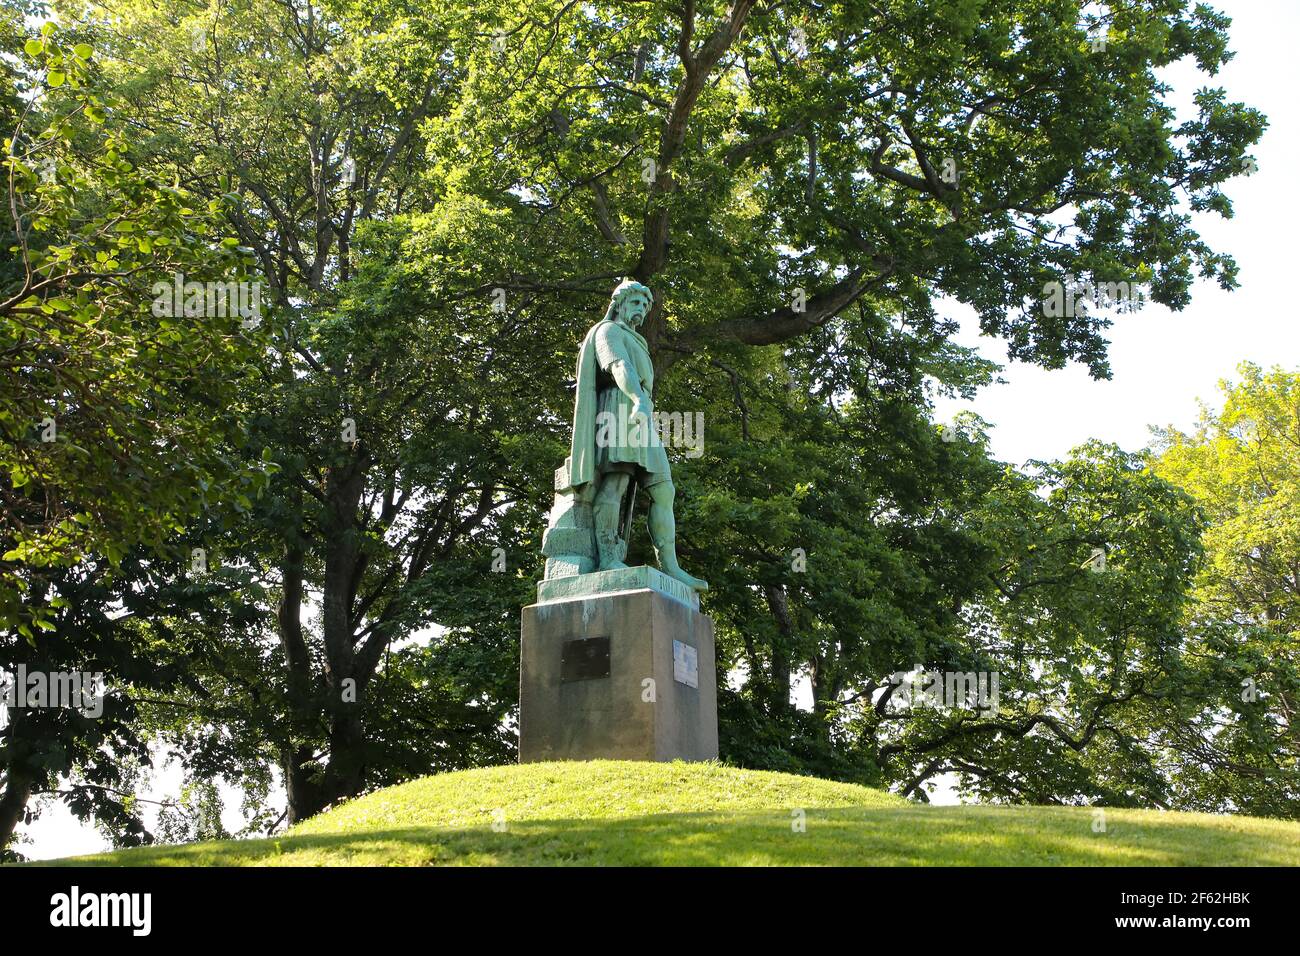 Viking Gange-Rolf oder Rollo Statue, die ein Wikingeroberhaupt war, und der erste Herzog der Normandie, der auf der Insel Giske, in der Nähe von Alesund geboren wurde. Das ist es Stockfoto